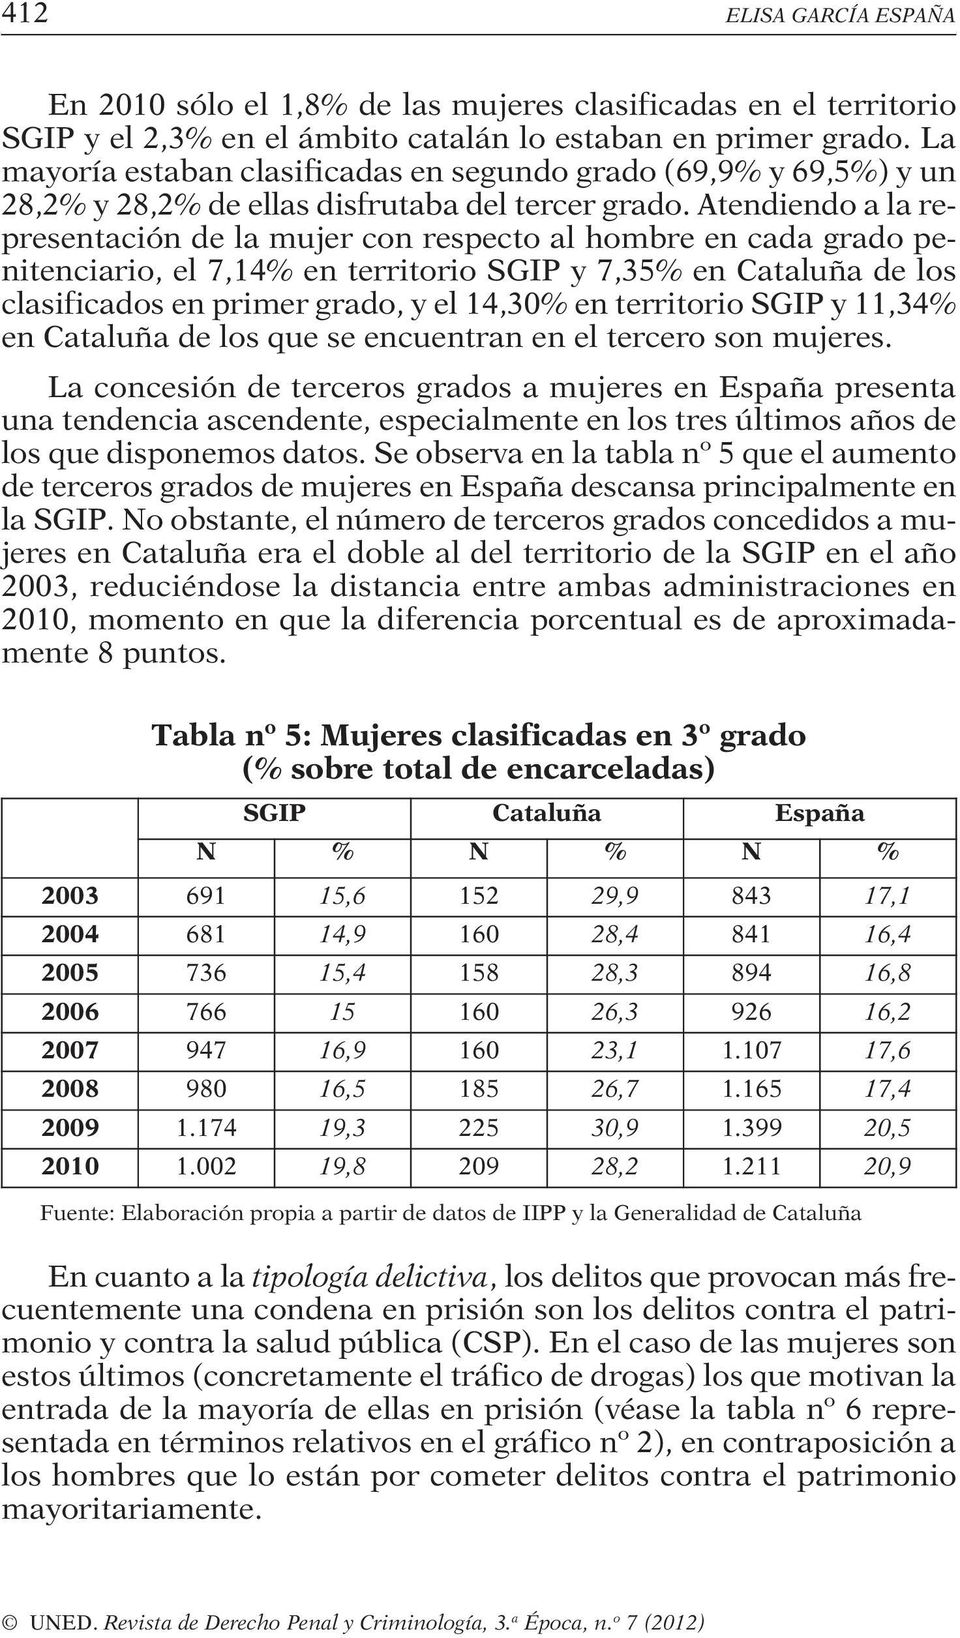 Atendiendo a la representación de la mujer con respecto al hombre en cada grado penitenciario, el 7,14% en territorio SGIP y 7,35% en Cataluña de los clasificados en primer grado, y el 14,30% en